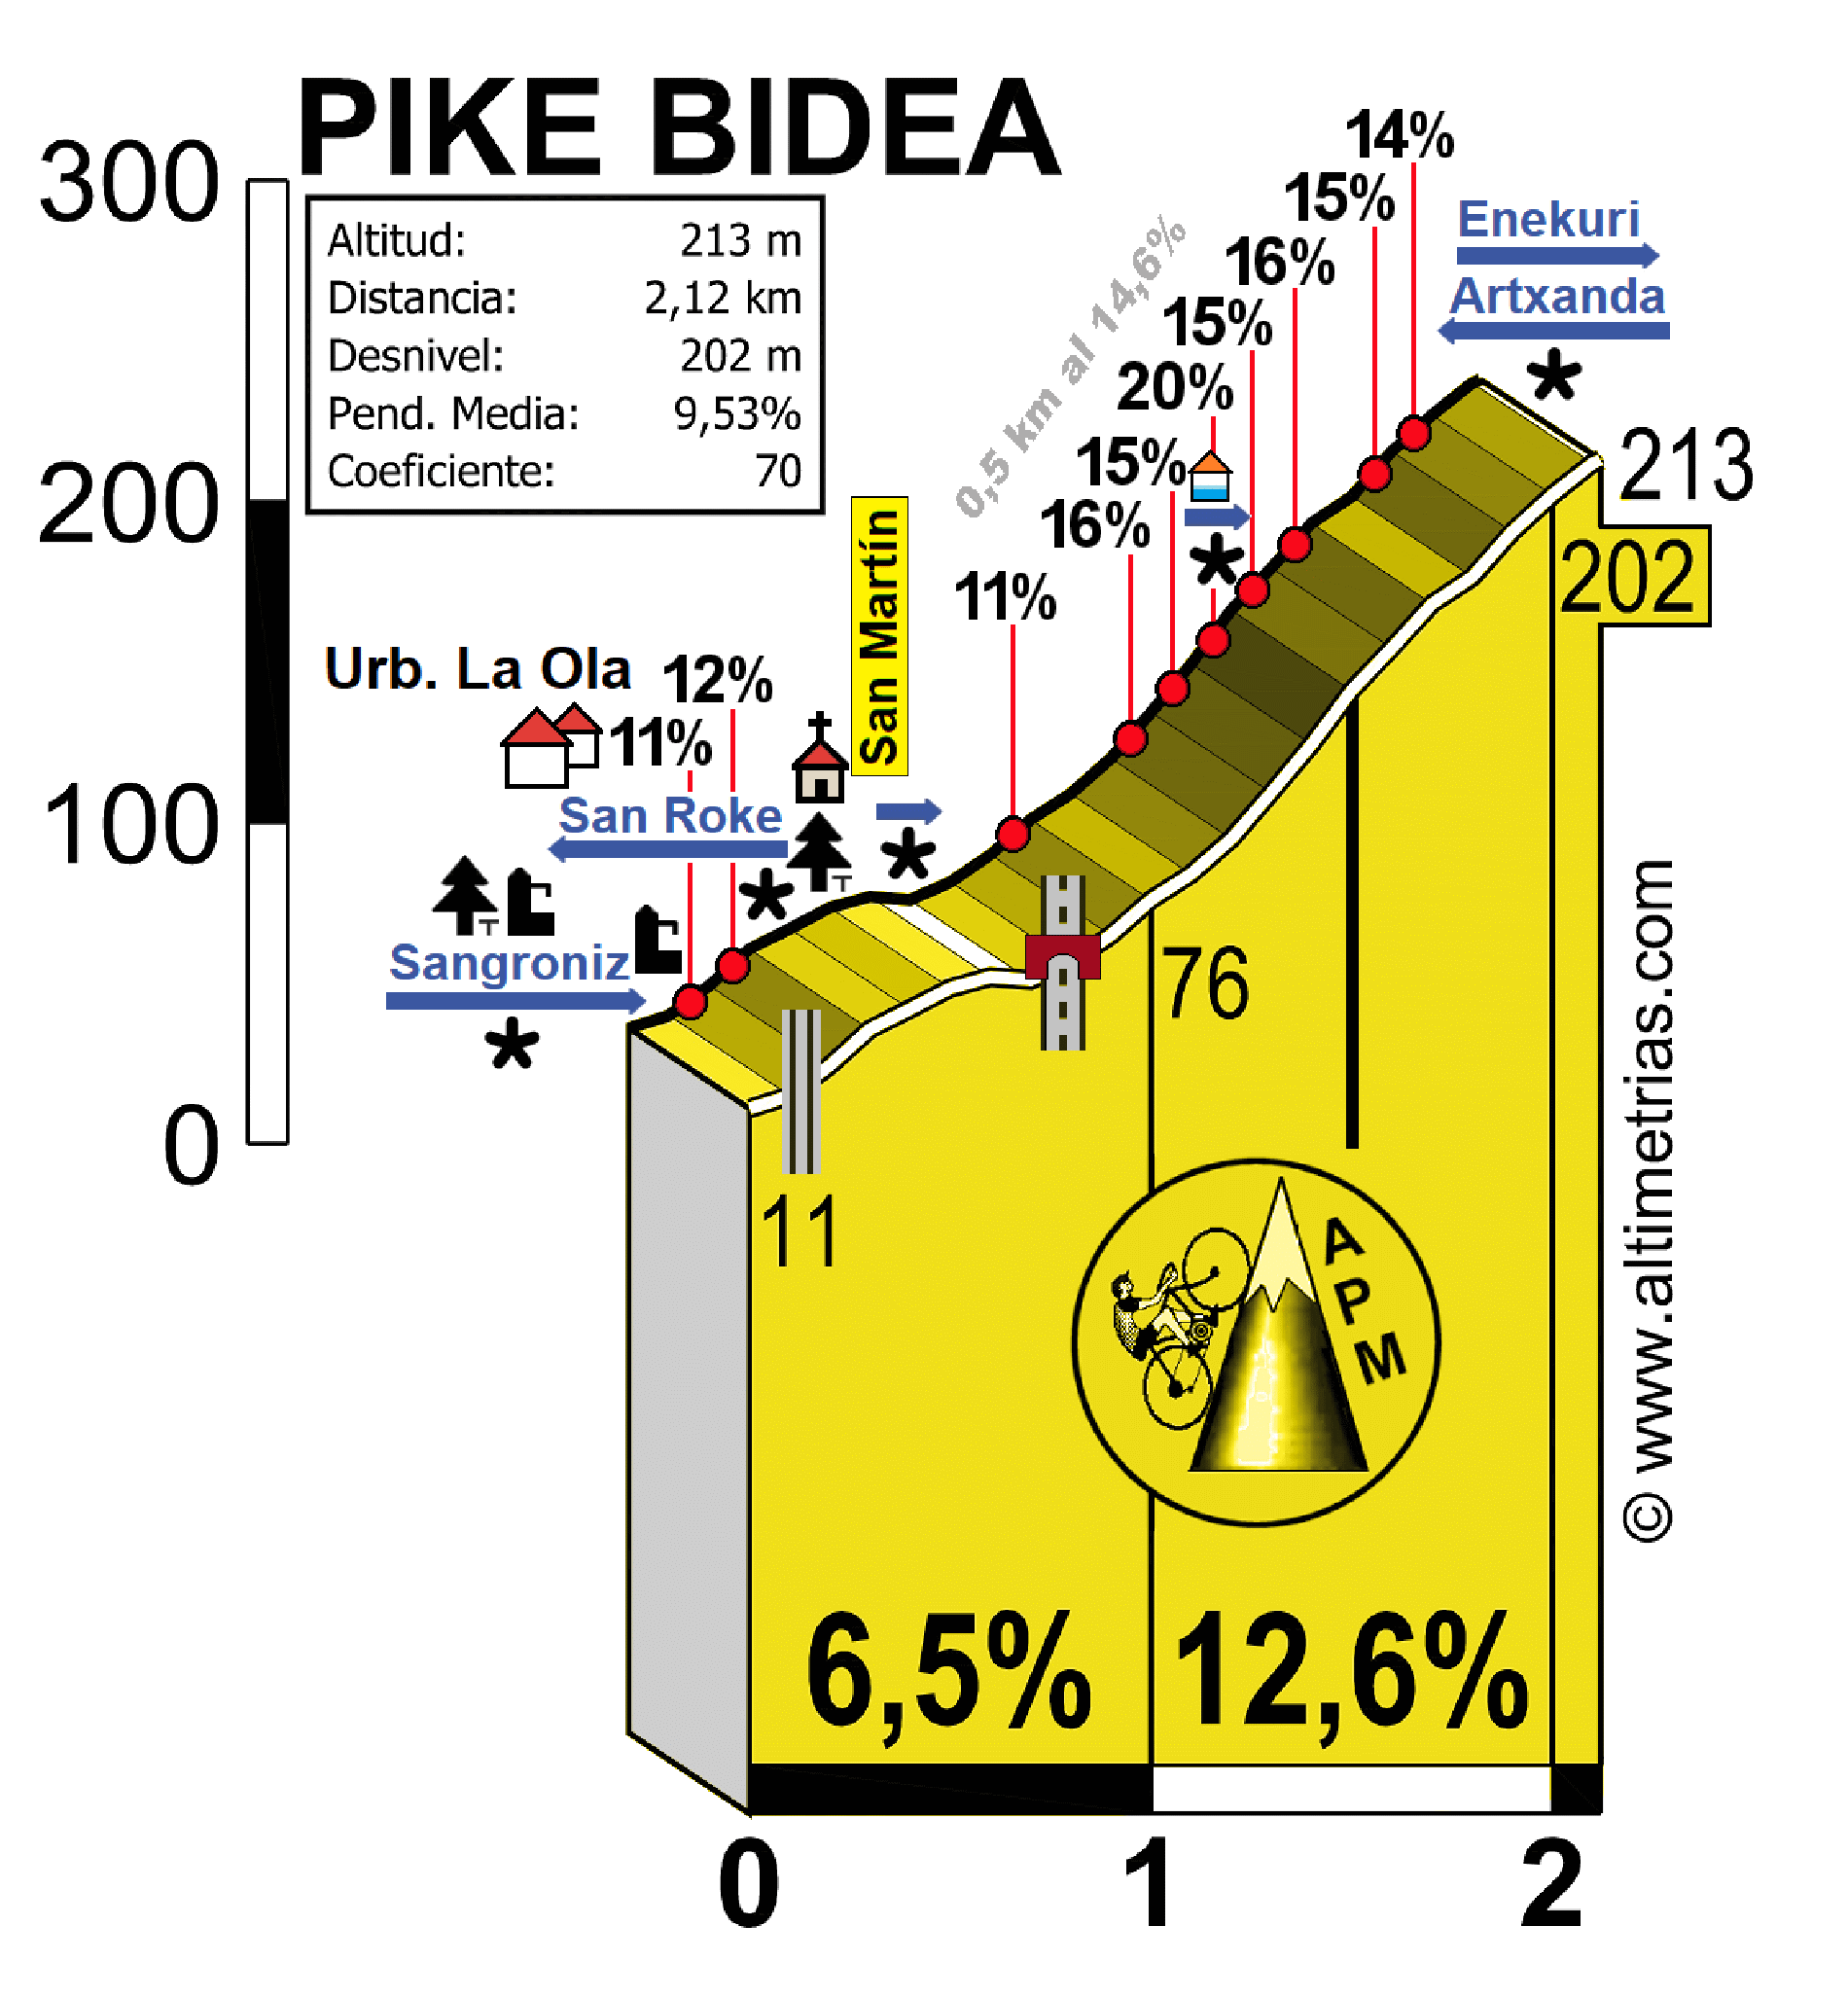 PIKE BIDEA, por La Ola